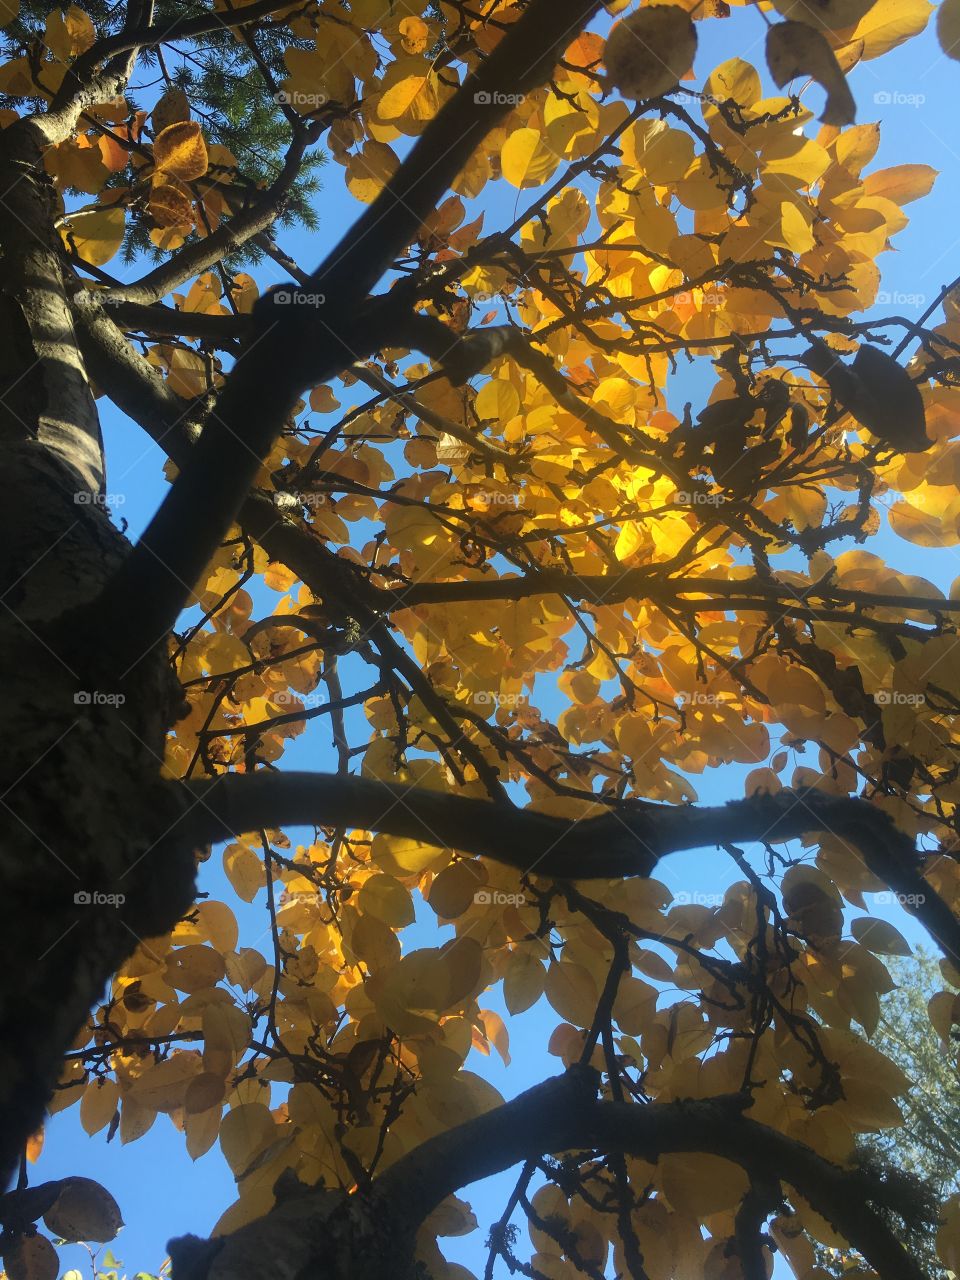 Fall, Tree, Leaf, Branch, Season